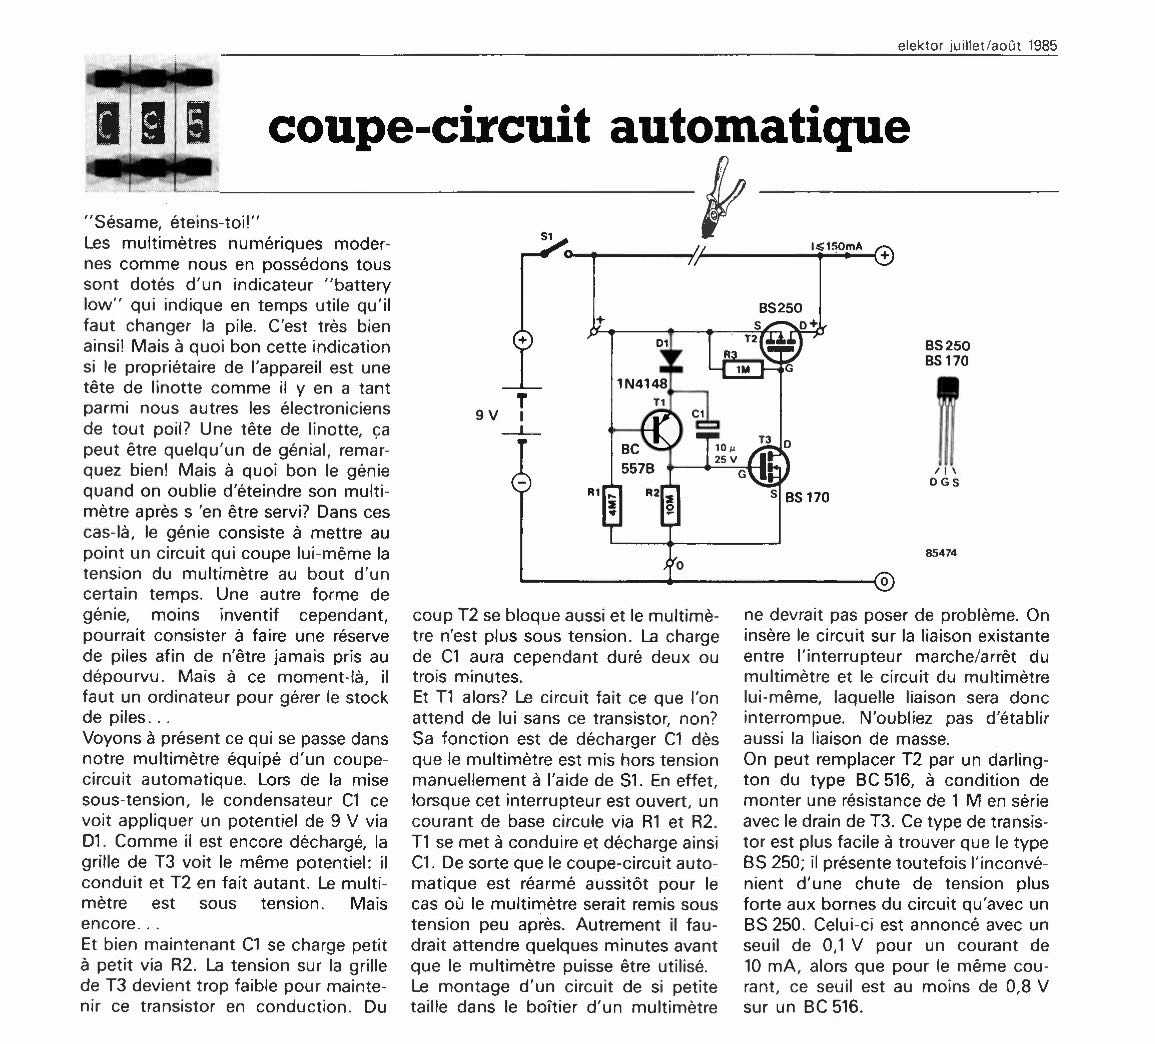 coupe-circuit automatique